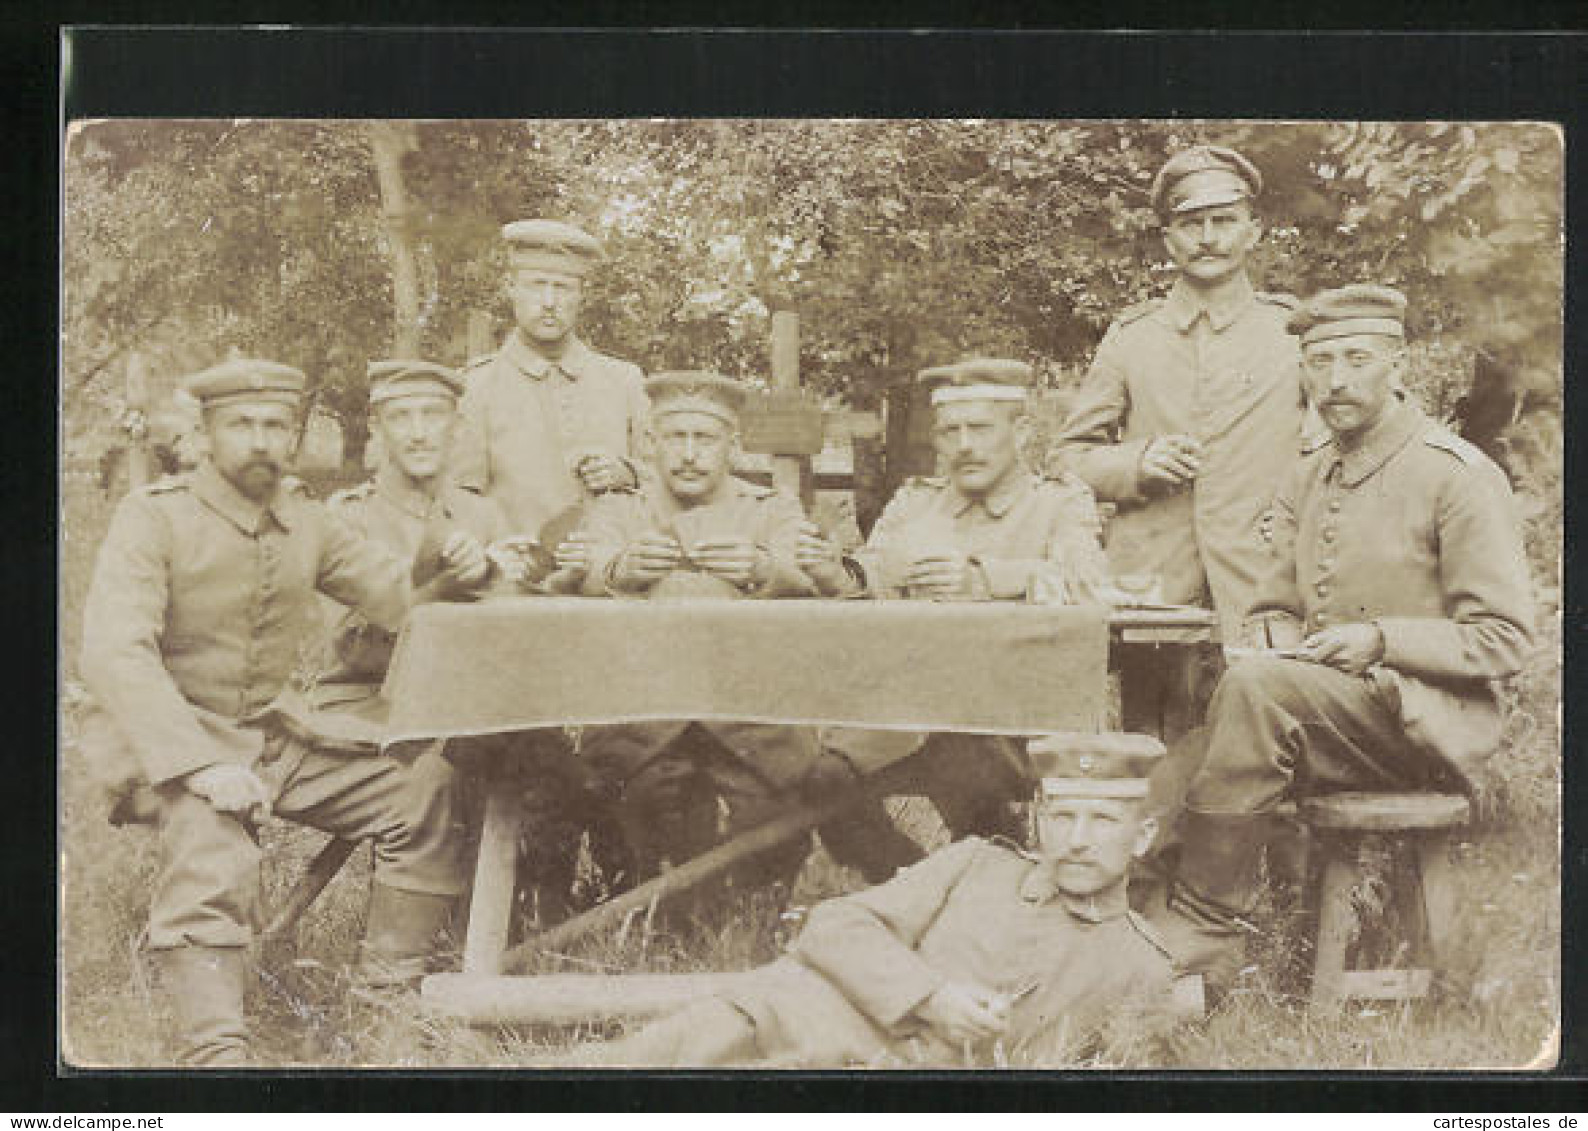 Foto-AK Soldaten Am Gartentisch Beim Kartenspiel  - Cartas